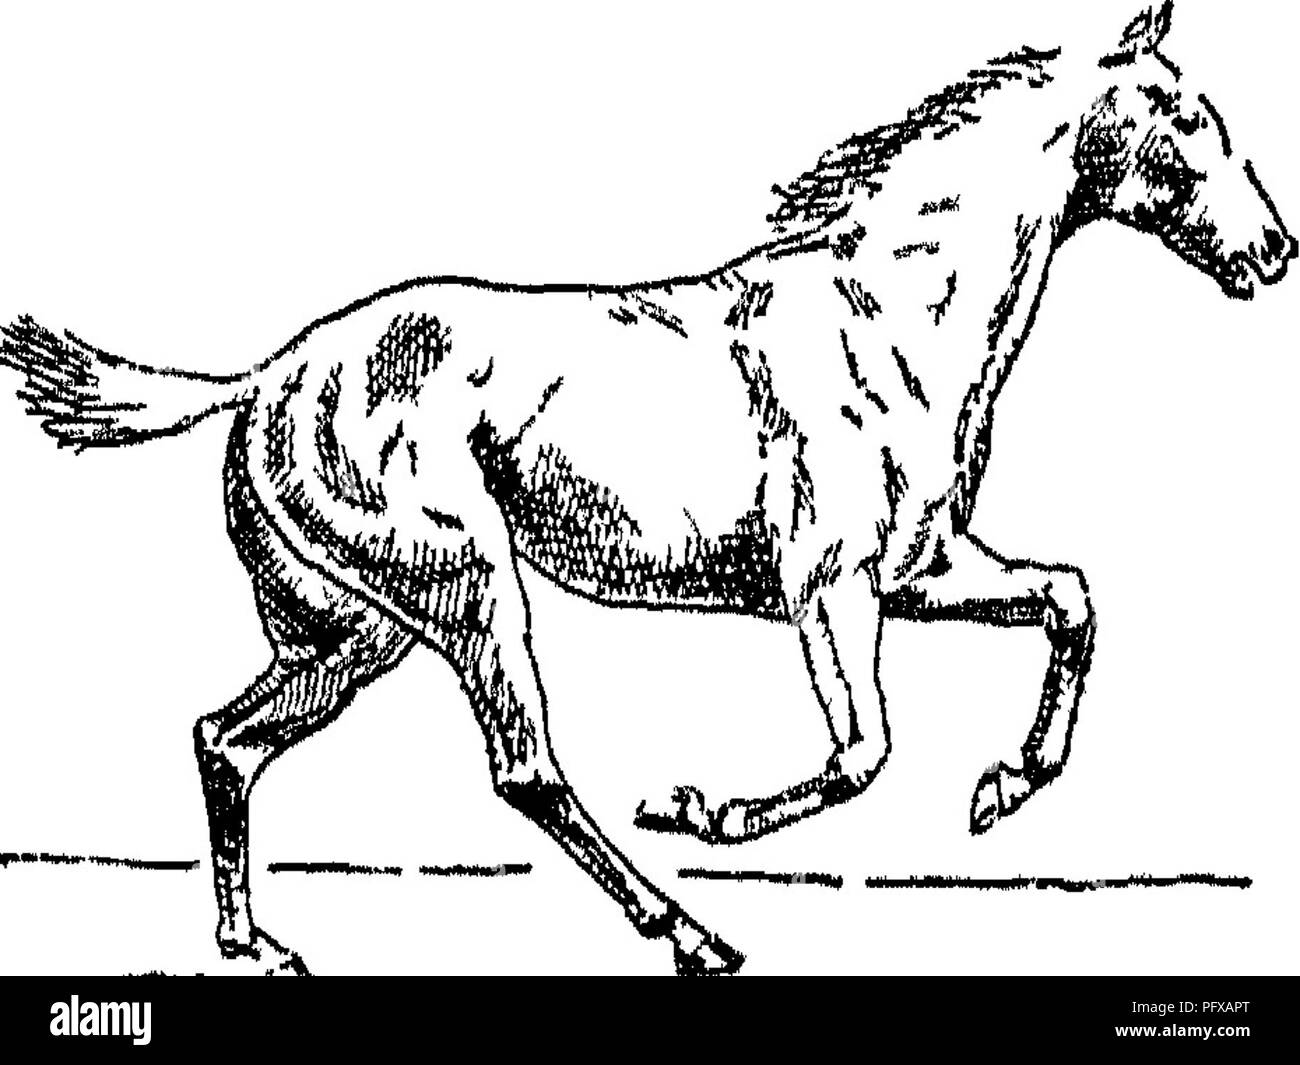 . Punkte des Pferdes; eine Abhandlung über den Körperbau, Bewegungen, Rassen und Evolution des Pferdes. Pferde. J "" * - ** H*^* N.™ w-Abb. 193. Des Pferdes Ije. k'? - [Fortsetzung). Abb. 194. sieben Yards in der Länge, es gibt nur einen Zeitpunkt, an dem die ** take off" ausgeführt werden können. Daher, wenn ein Pferd nicht die Länge seiner Stride regulieren, wenn auf einem Zaun, kann er leicht einen Fehler machen. Lassen Sie uns annehmen, daß, während eine Schrittlänge von fünf Yards, bringt er seine führende fore Bein drei Yards kurz der richtige Ort, an dem Er hätte sich zu entfernen; er wird dann haben drei Yar zu springen Stockfoto